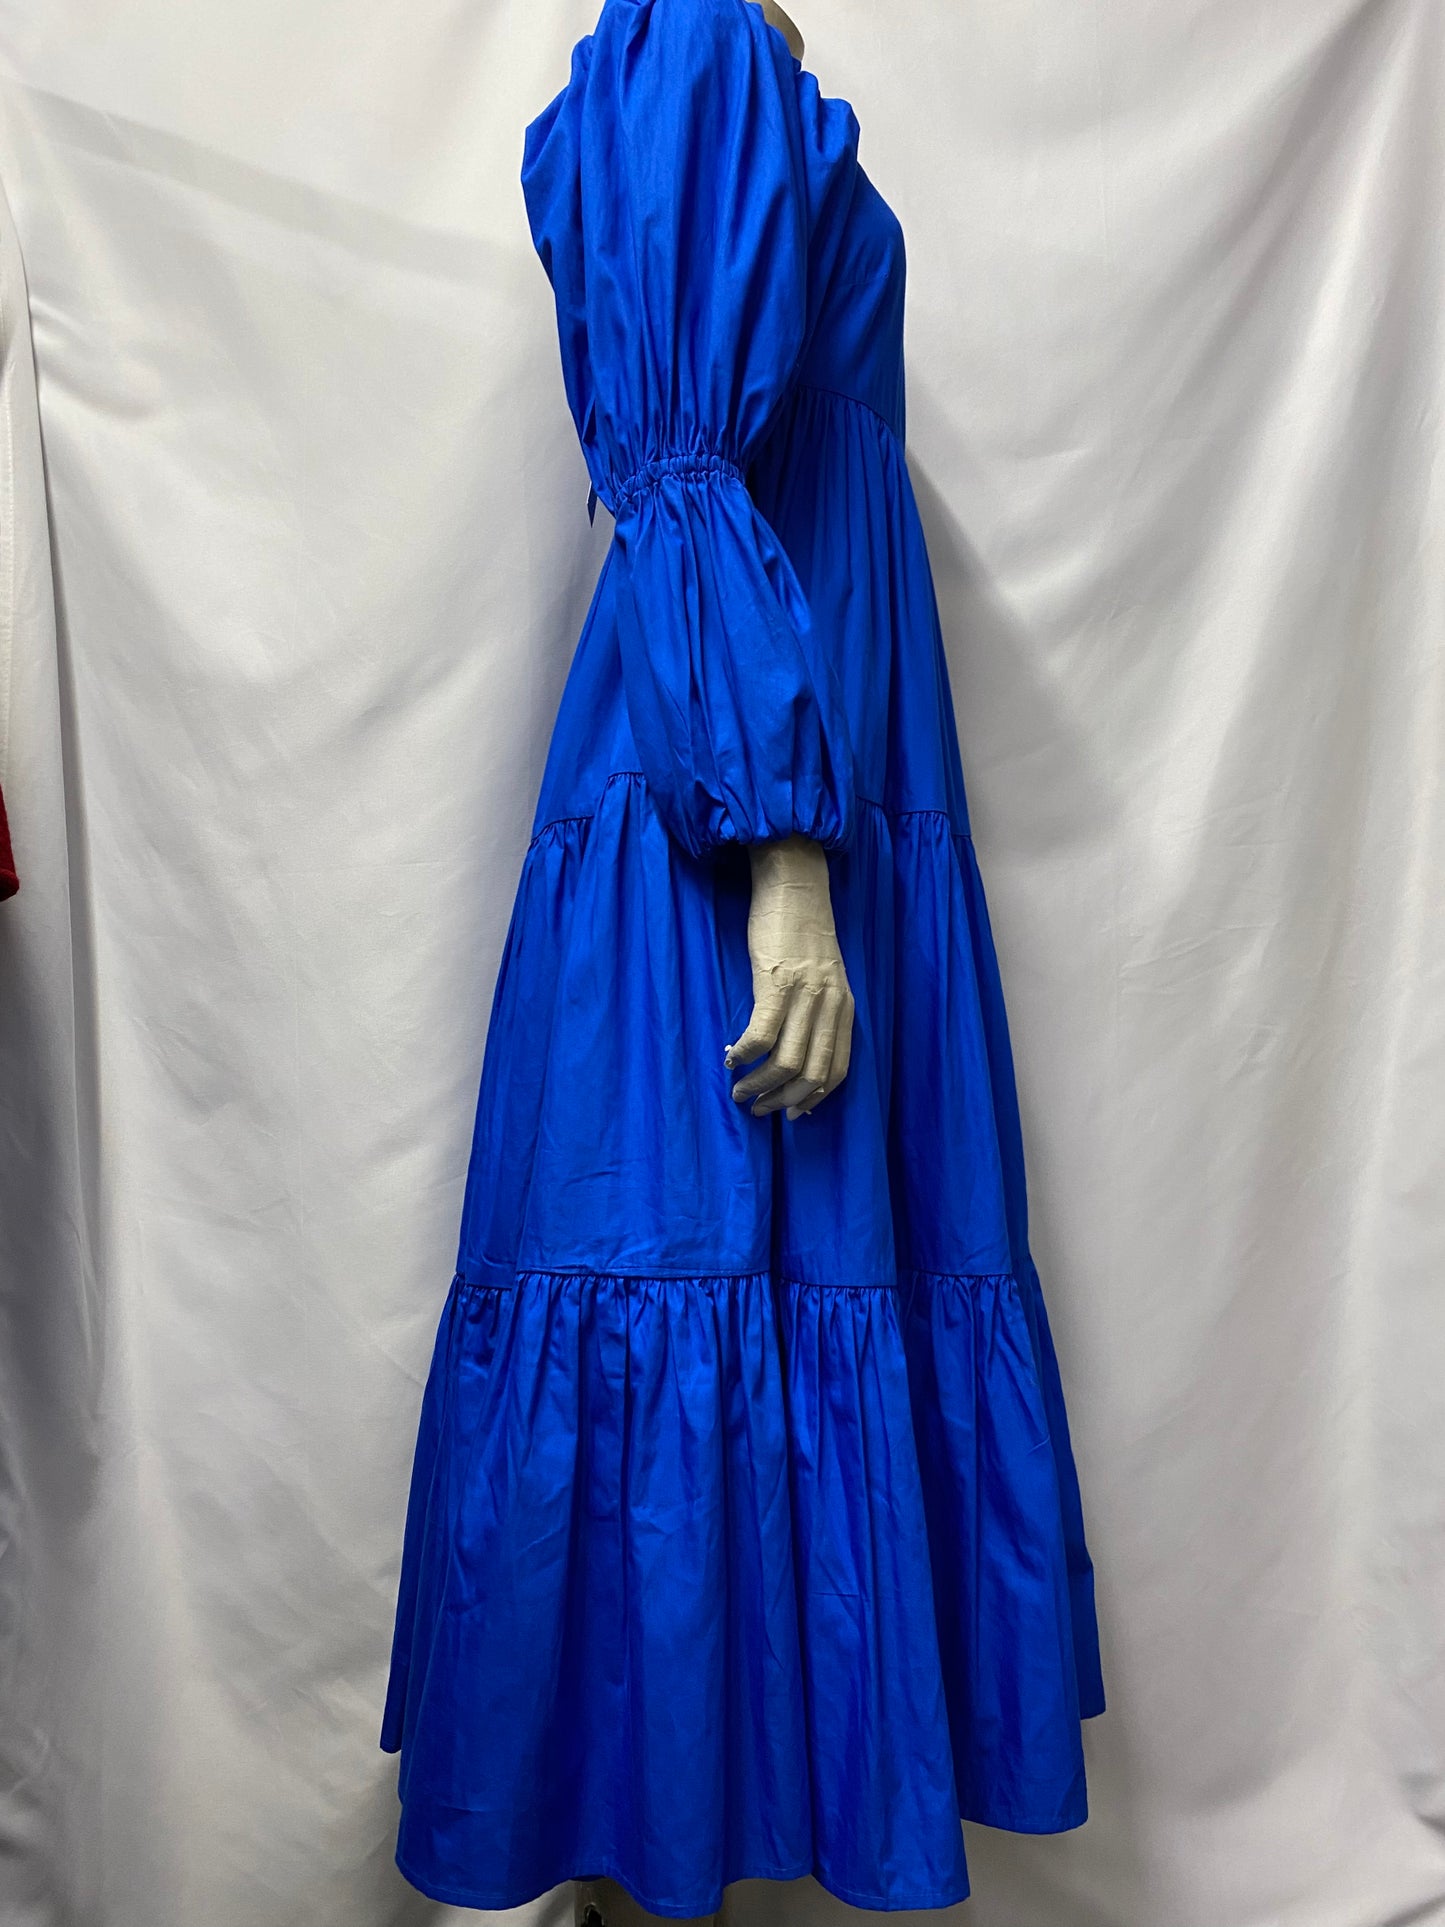 Malie Royal Blue Cotton Princi Dress 10 BNWT